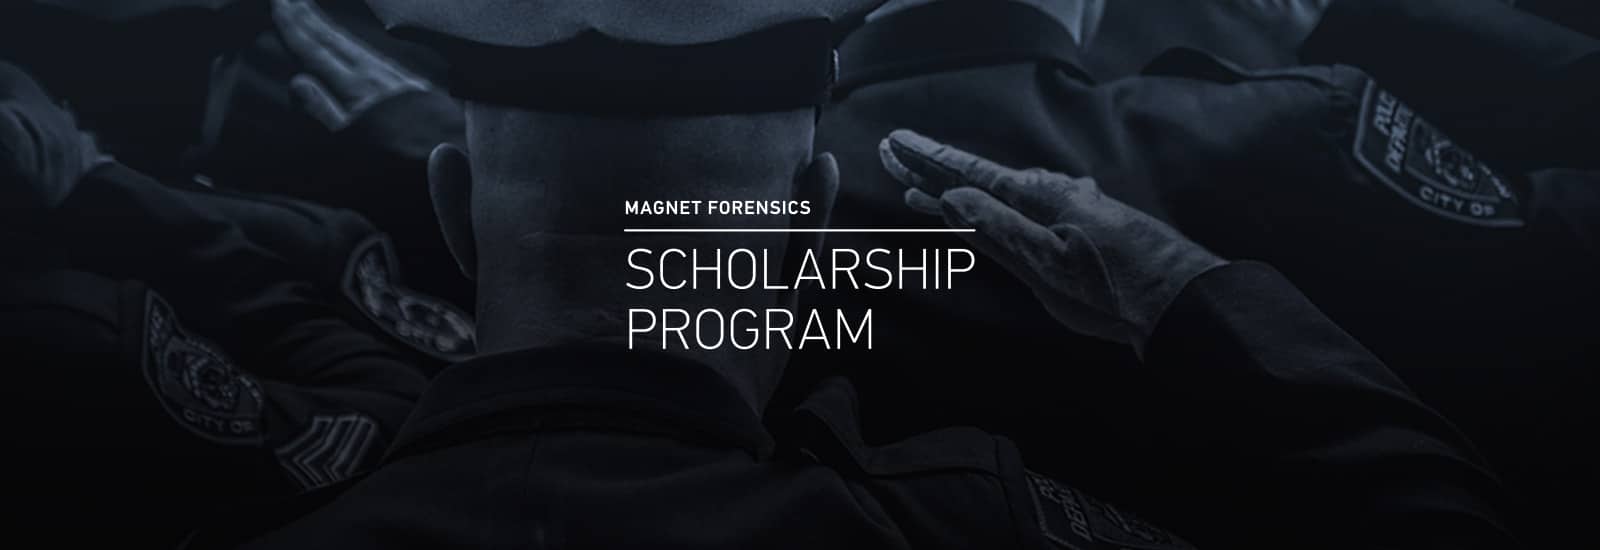 Magnet Forensics Scholarship Program